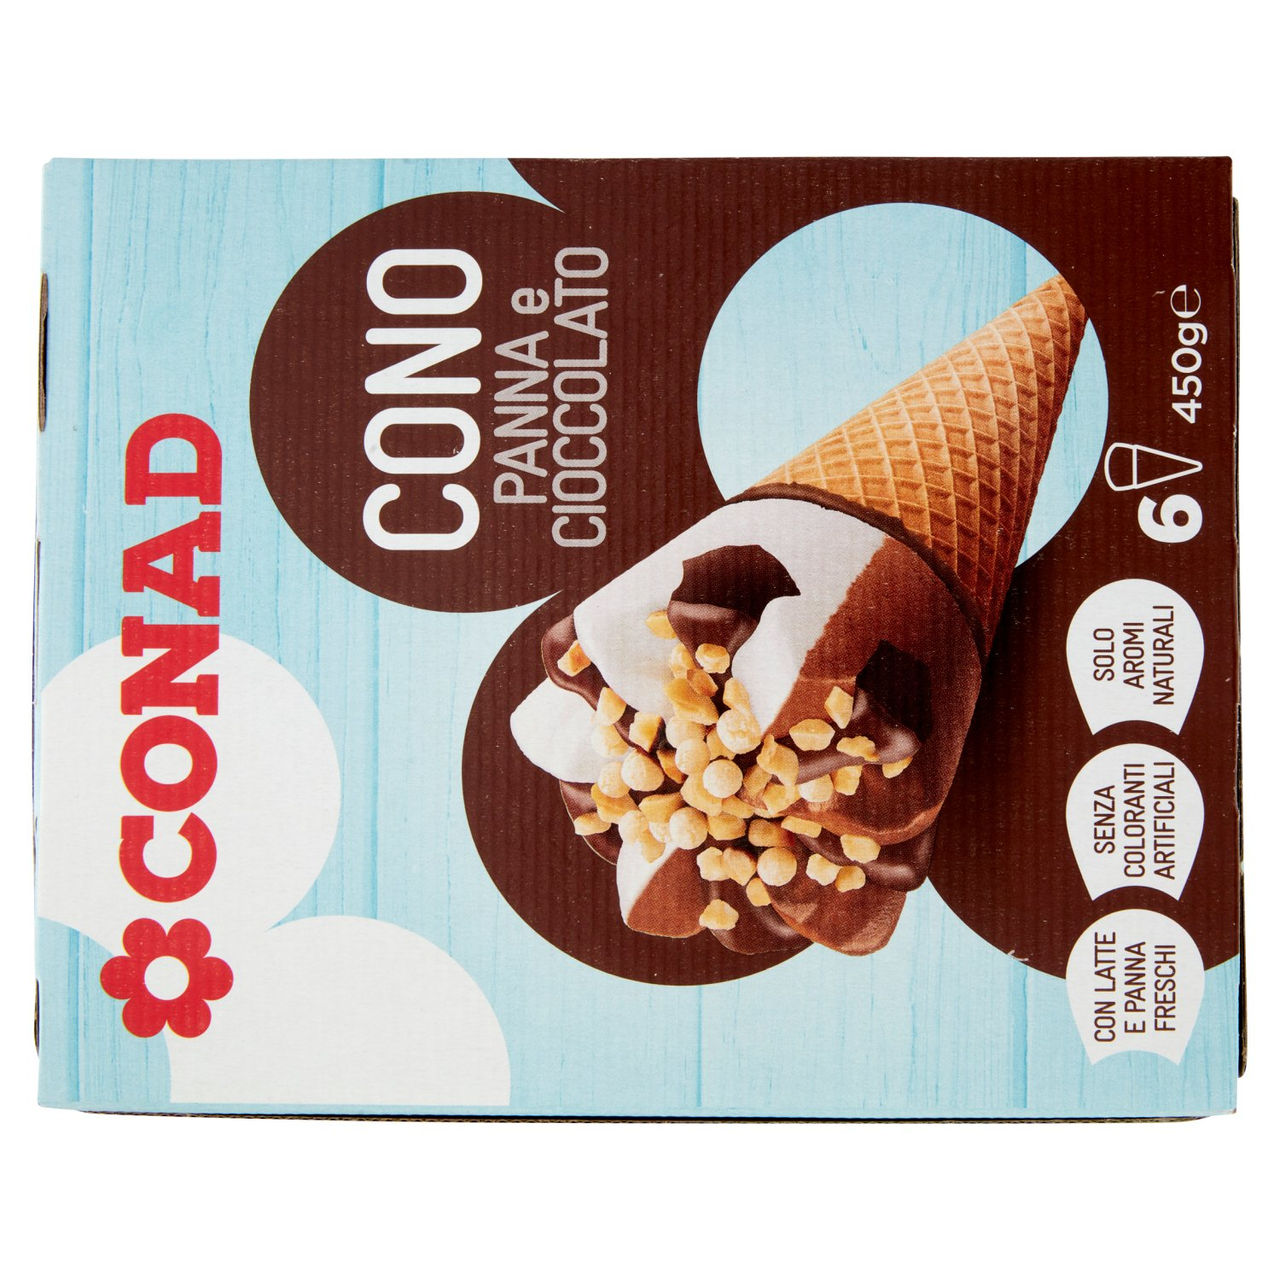 Cono Panna e Cioccolato 6 gelati Conad online